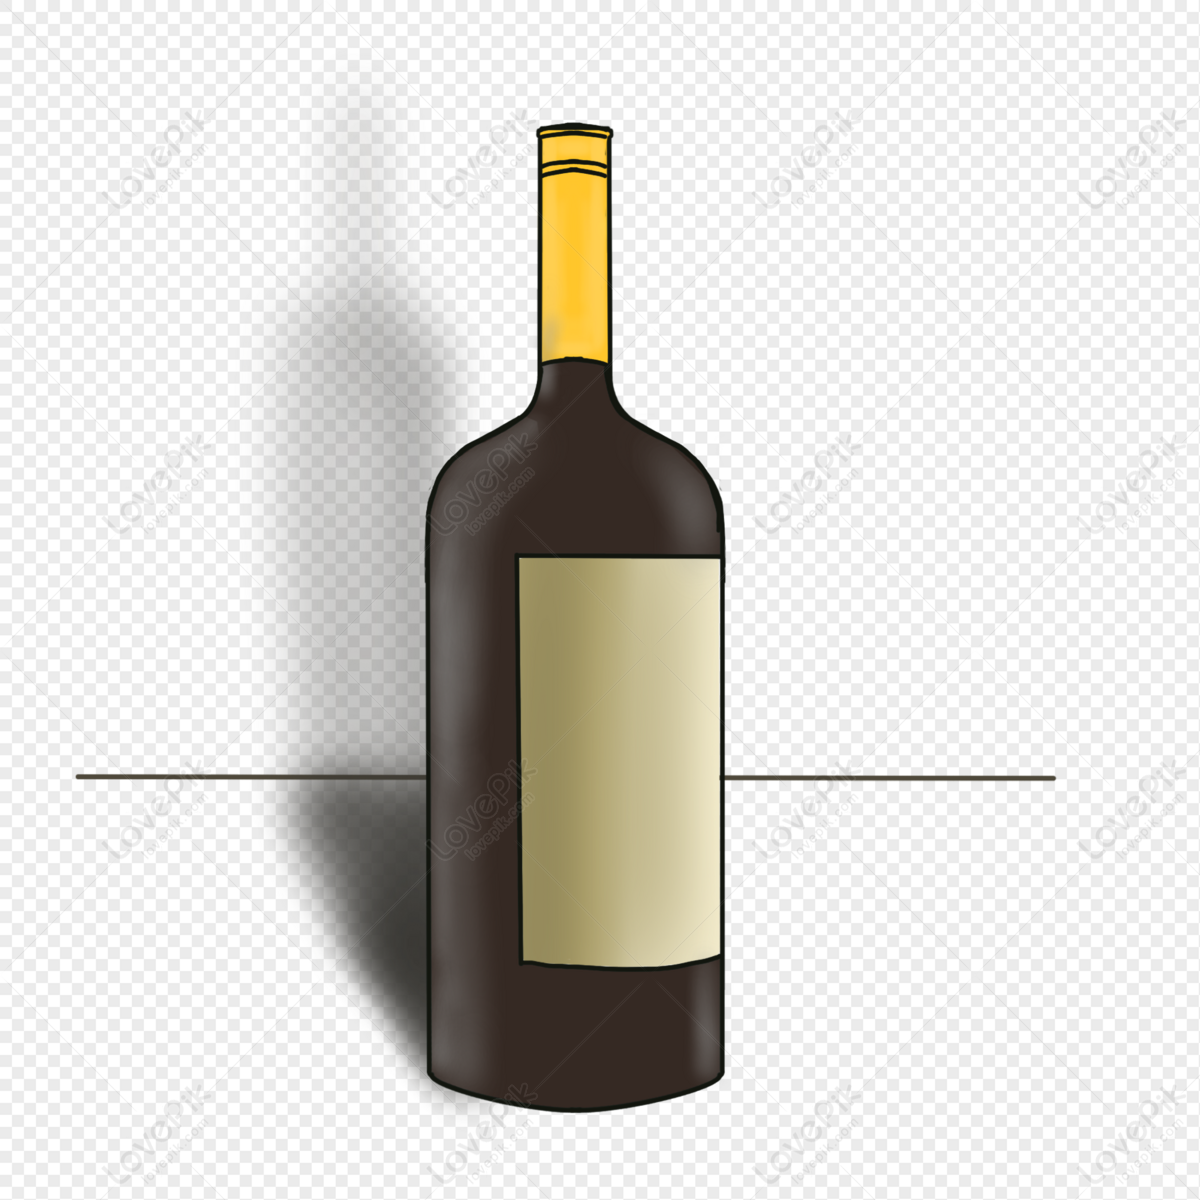 Một Hình Ảnh Đồ Họa Của Một Chai Rượu Vang Đỏ Với Nút Chai Và Thủy Tinh Hình  minh họa Sẵn có - Tải xuống Hình ảnh Ngay bây giờ - iStock